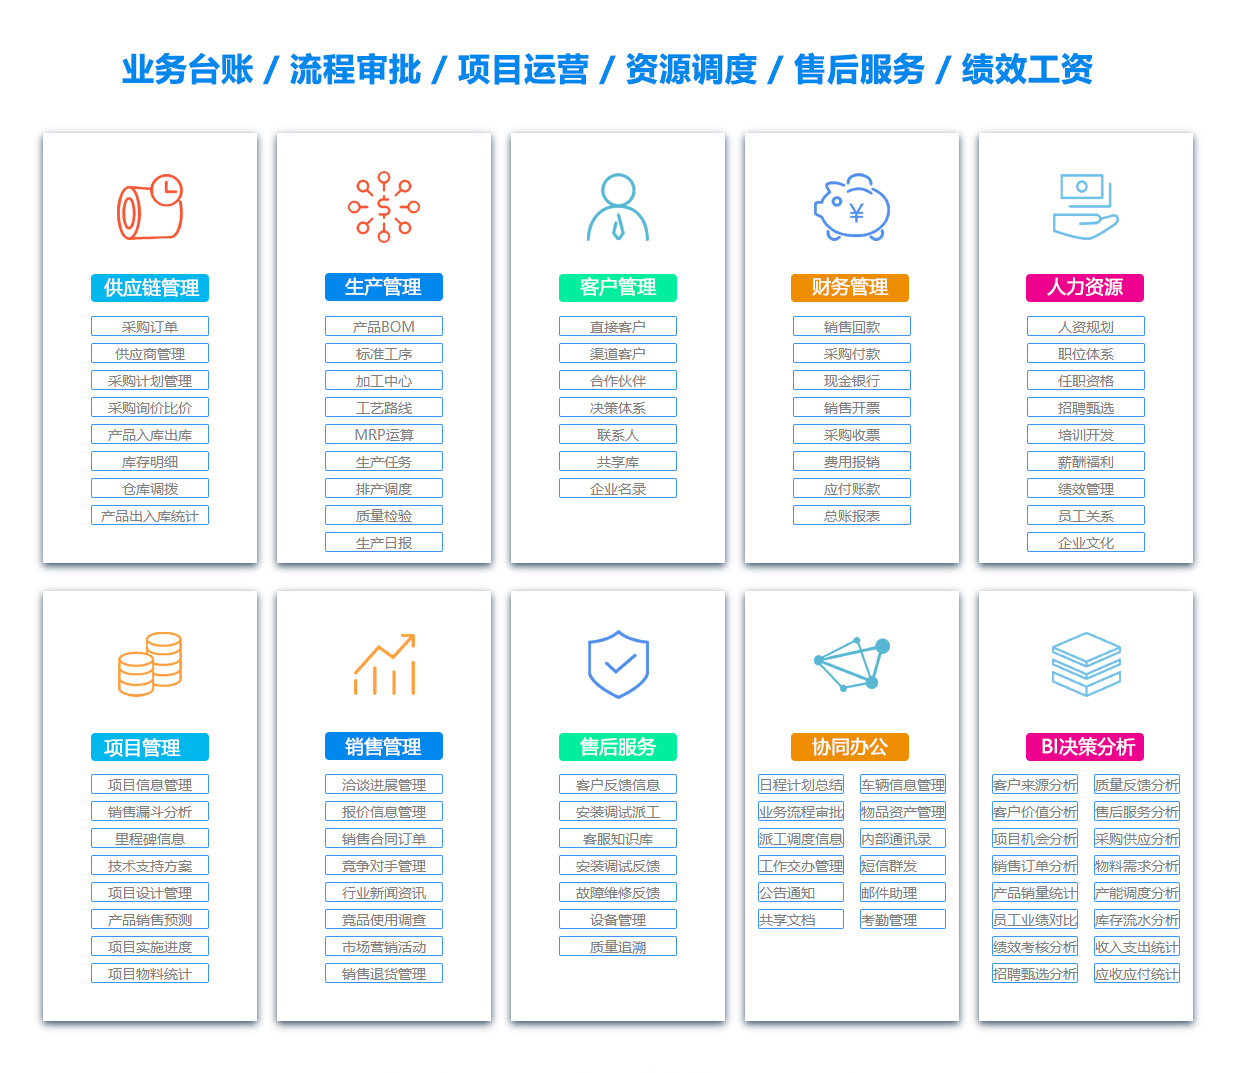 惠州BI:商业智能软件